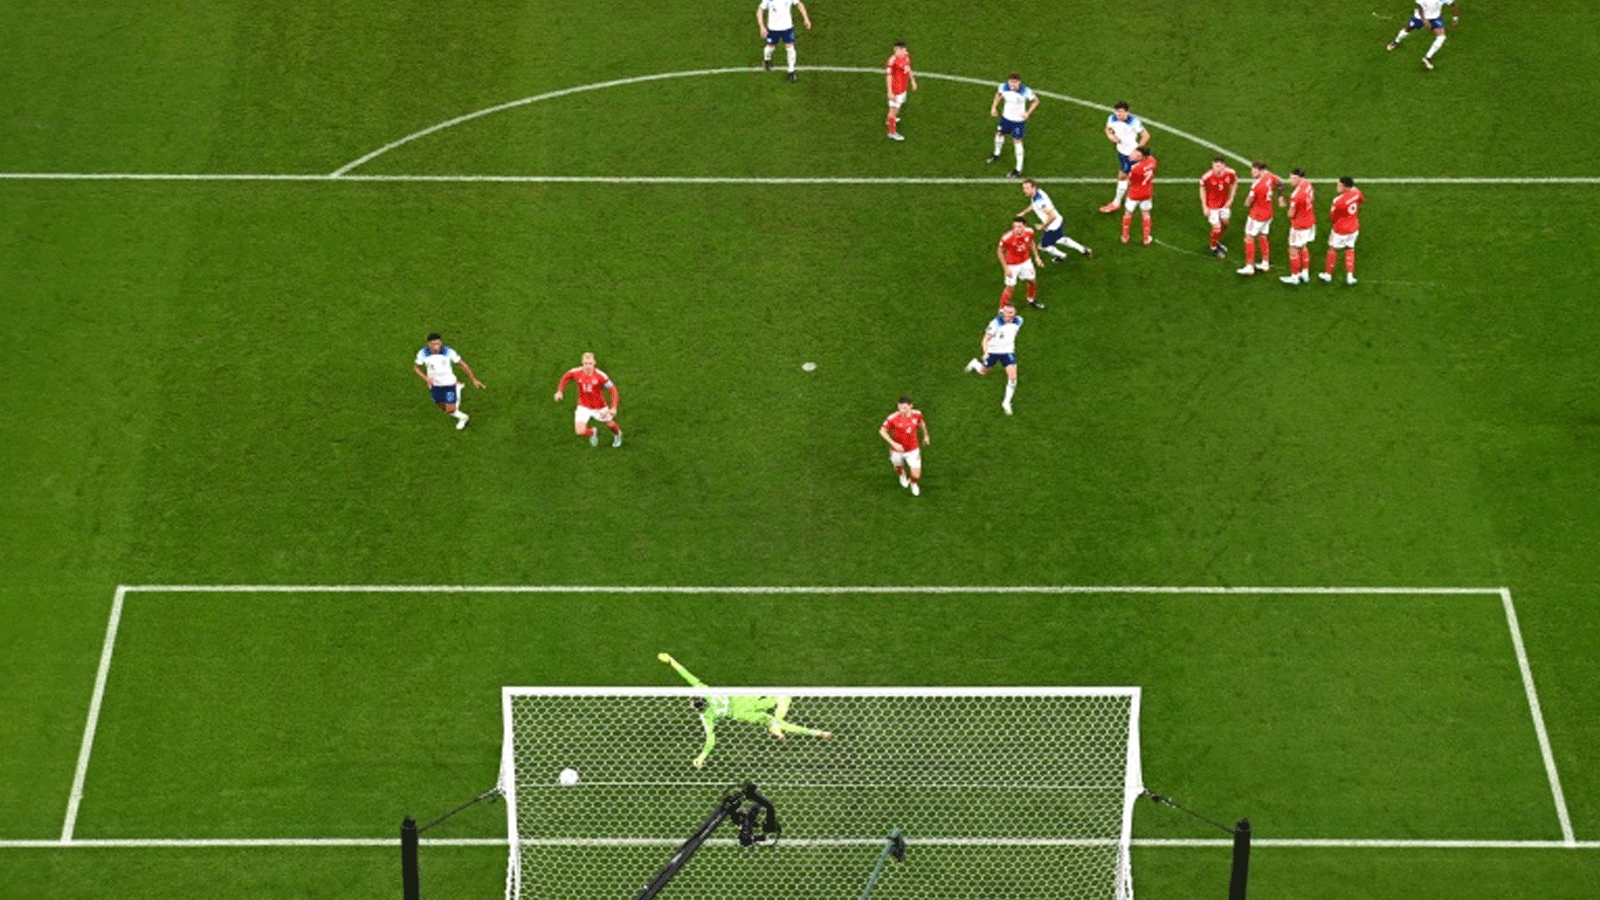 ماركوس راشفورد (اعلى الصورة الى اليمين) يسجل هدف انكلترا الاول في مرمى ويلز في مونديال 2022. 29 تشرين الثاني/نوفمبر 2022